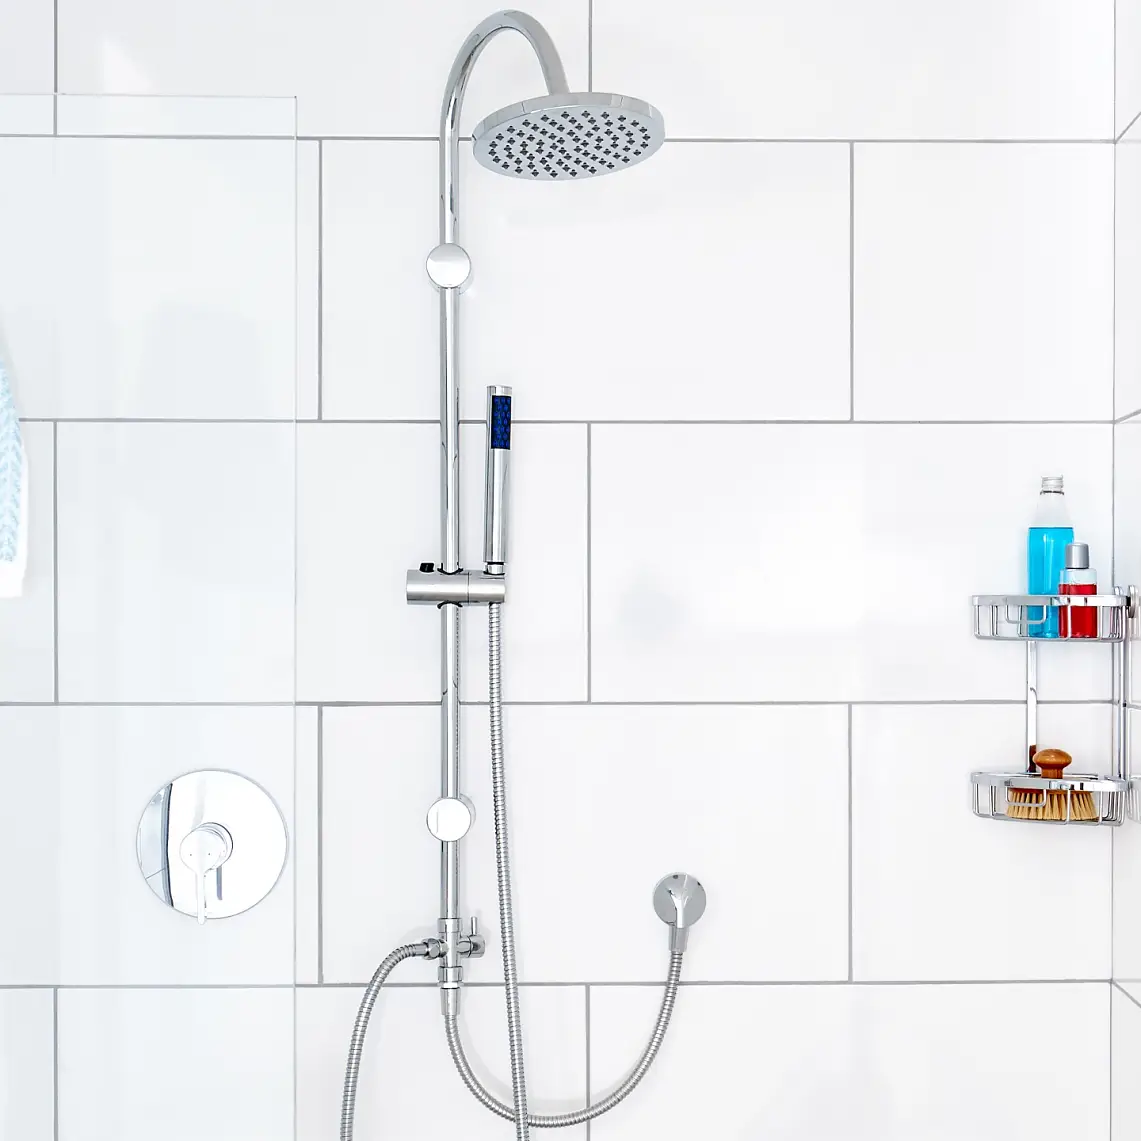 L’élément indispensable de votre douche. Nos barres de douche au design minimaliste améliorent le flux de votre douche et votre expérience.